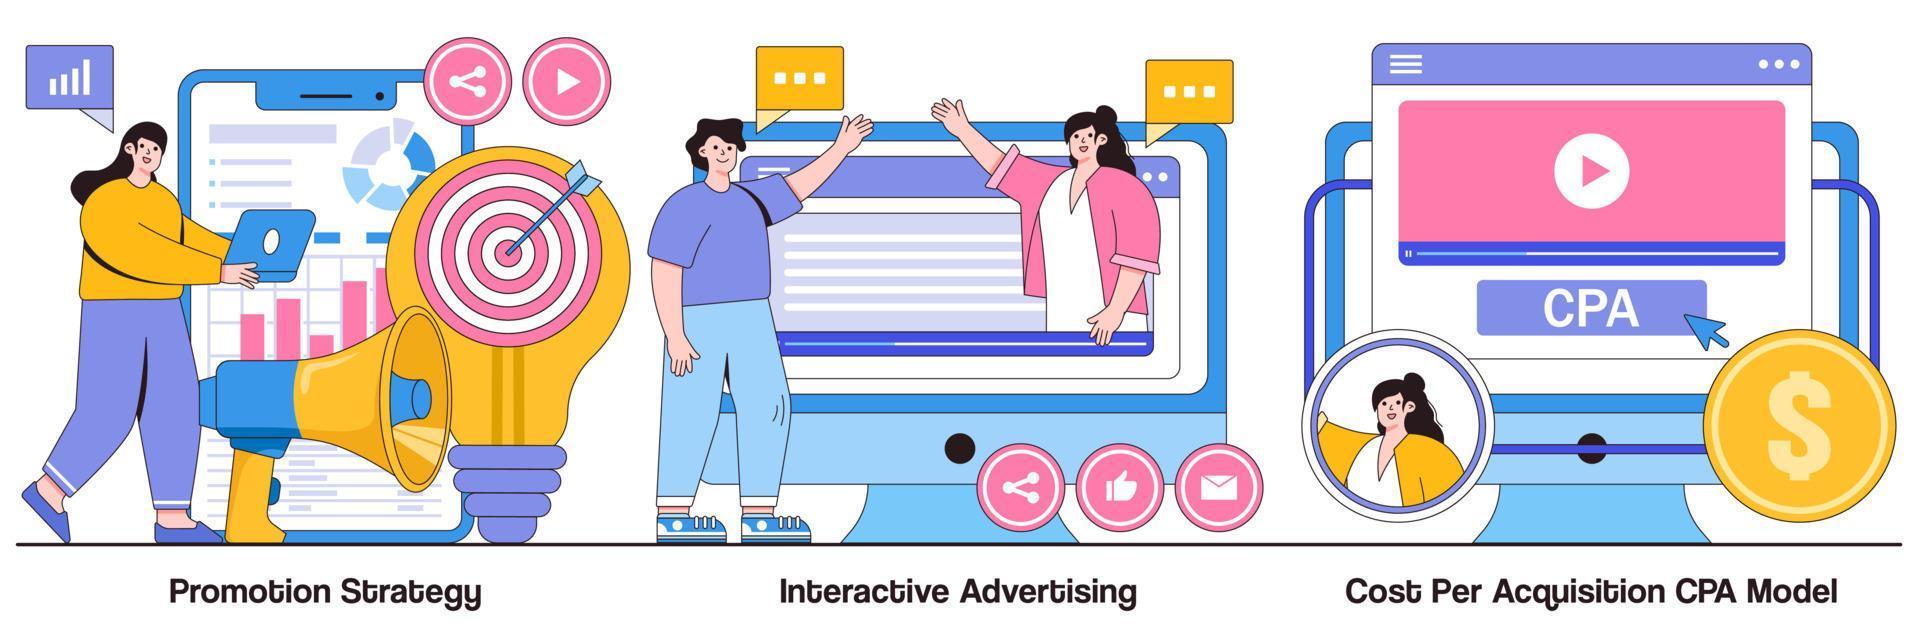 stratégie de promotion, publicité interactive et pack illustré de modèle de coût par acquisition cpa vecteur